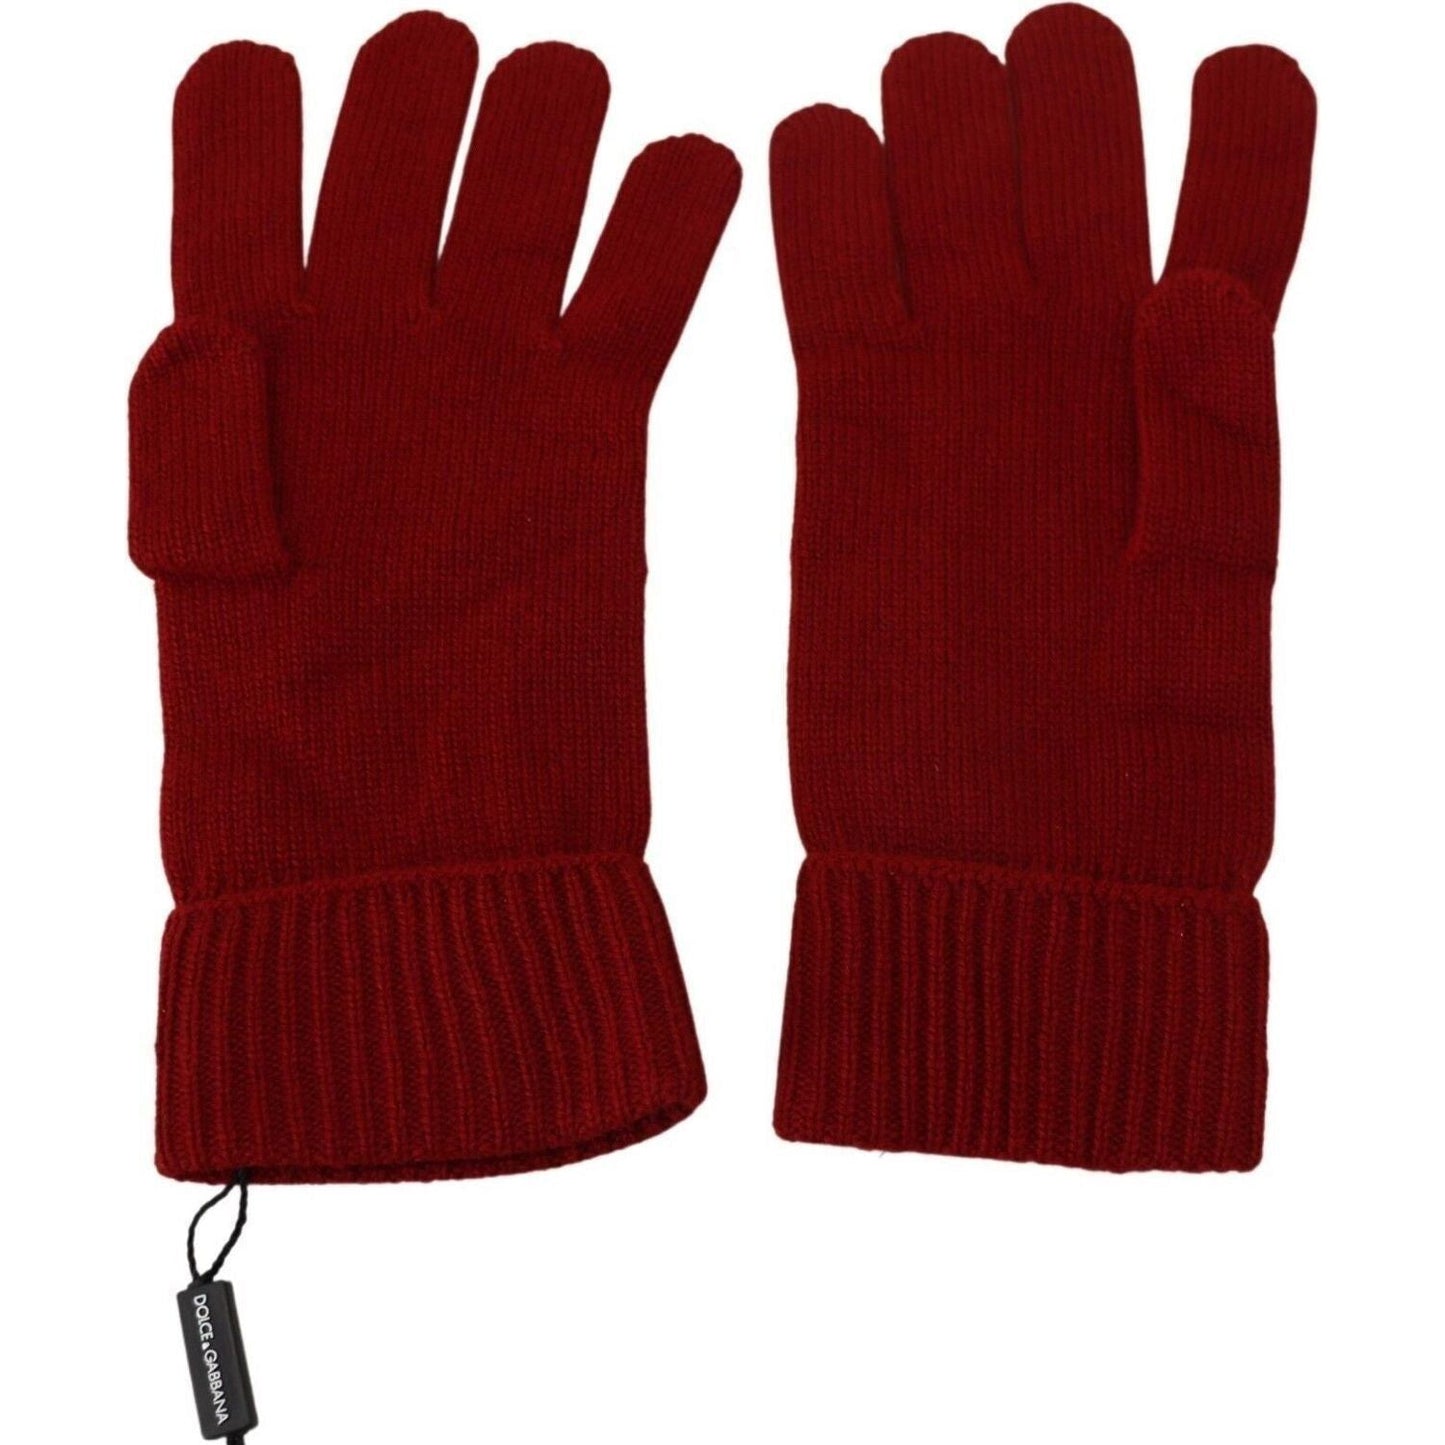 Dolce & Gabbana Elegant Red Cashmere Winter Gloves red-100-cashmere-knit-hands-mitten-mens-gloves